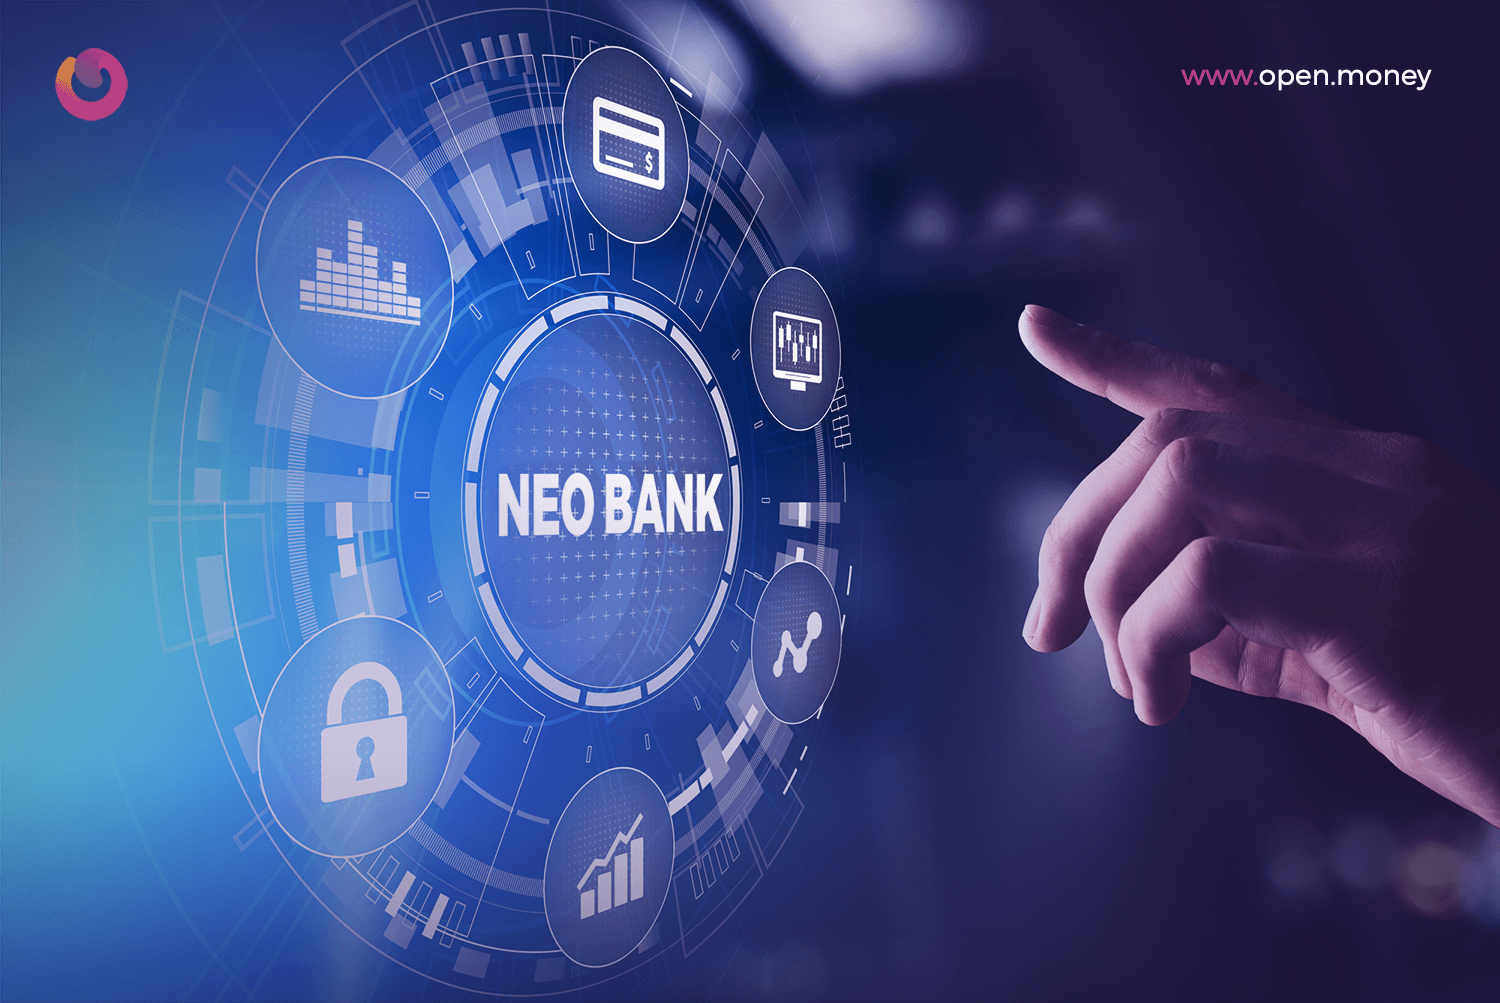 Neo bank